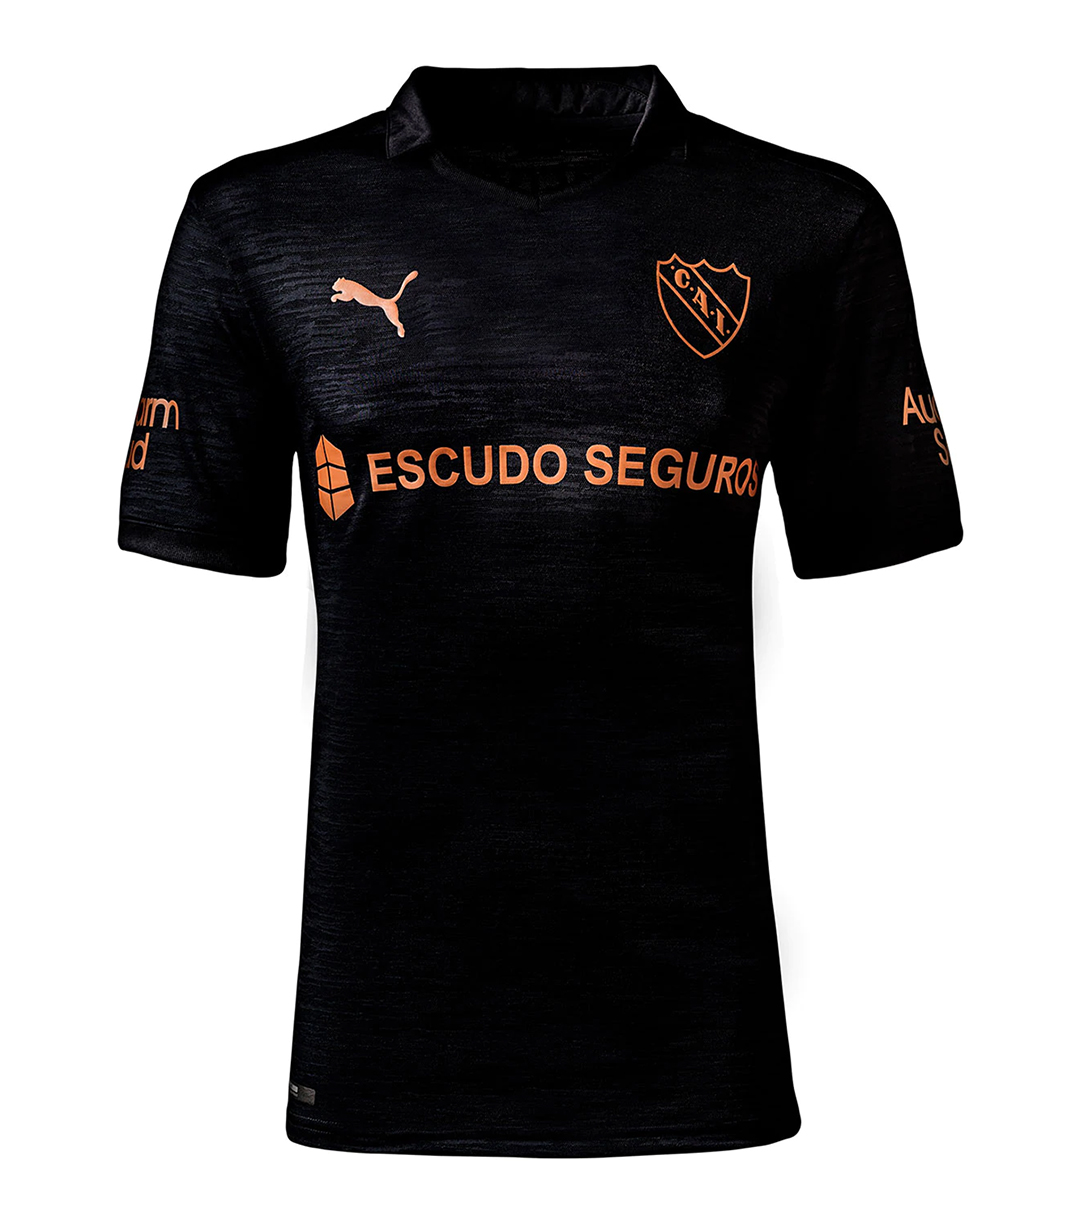 Camiseta PUMA de Independiente Paladar Negro 2020